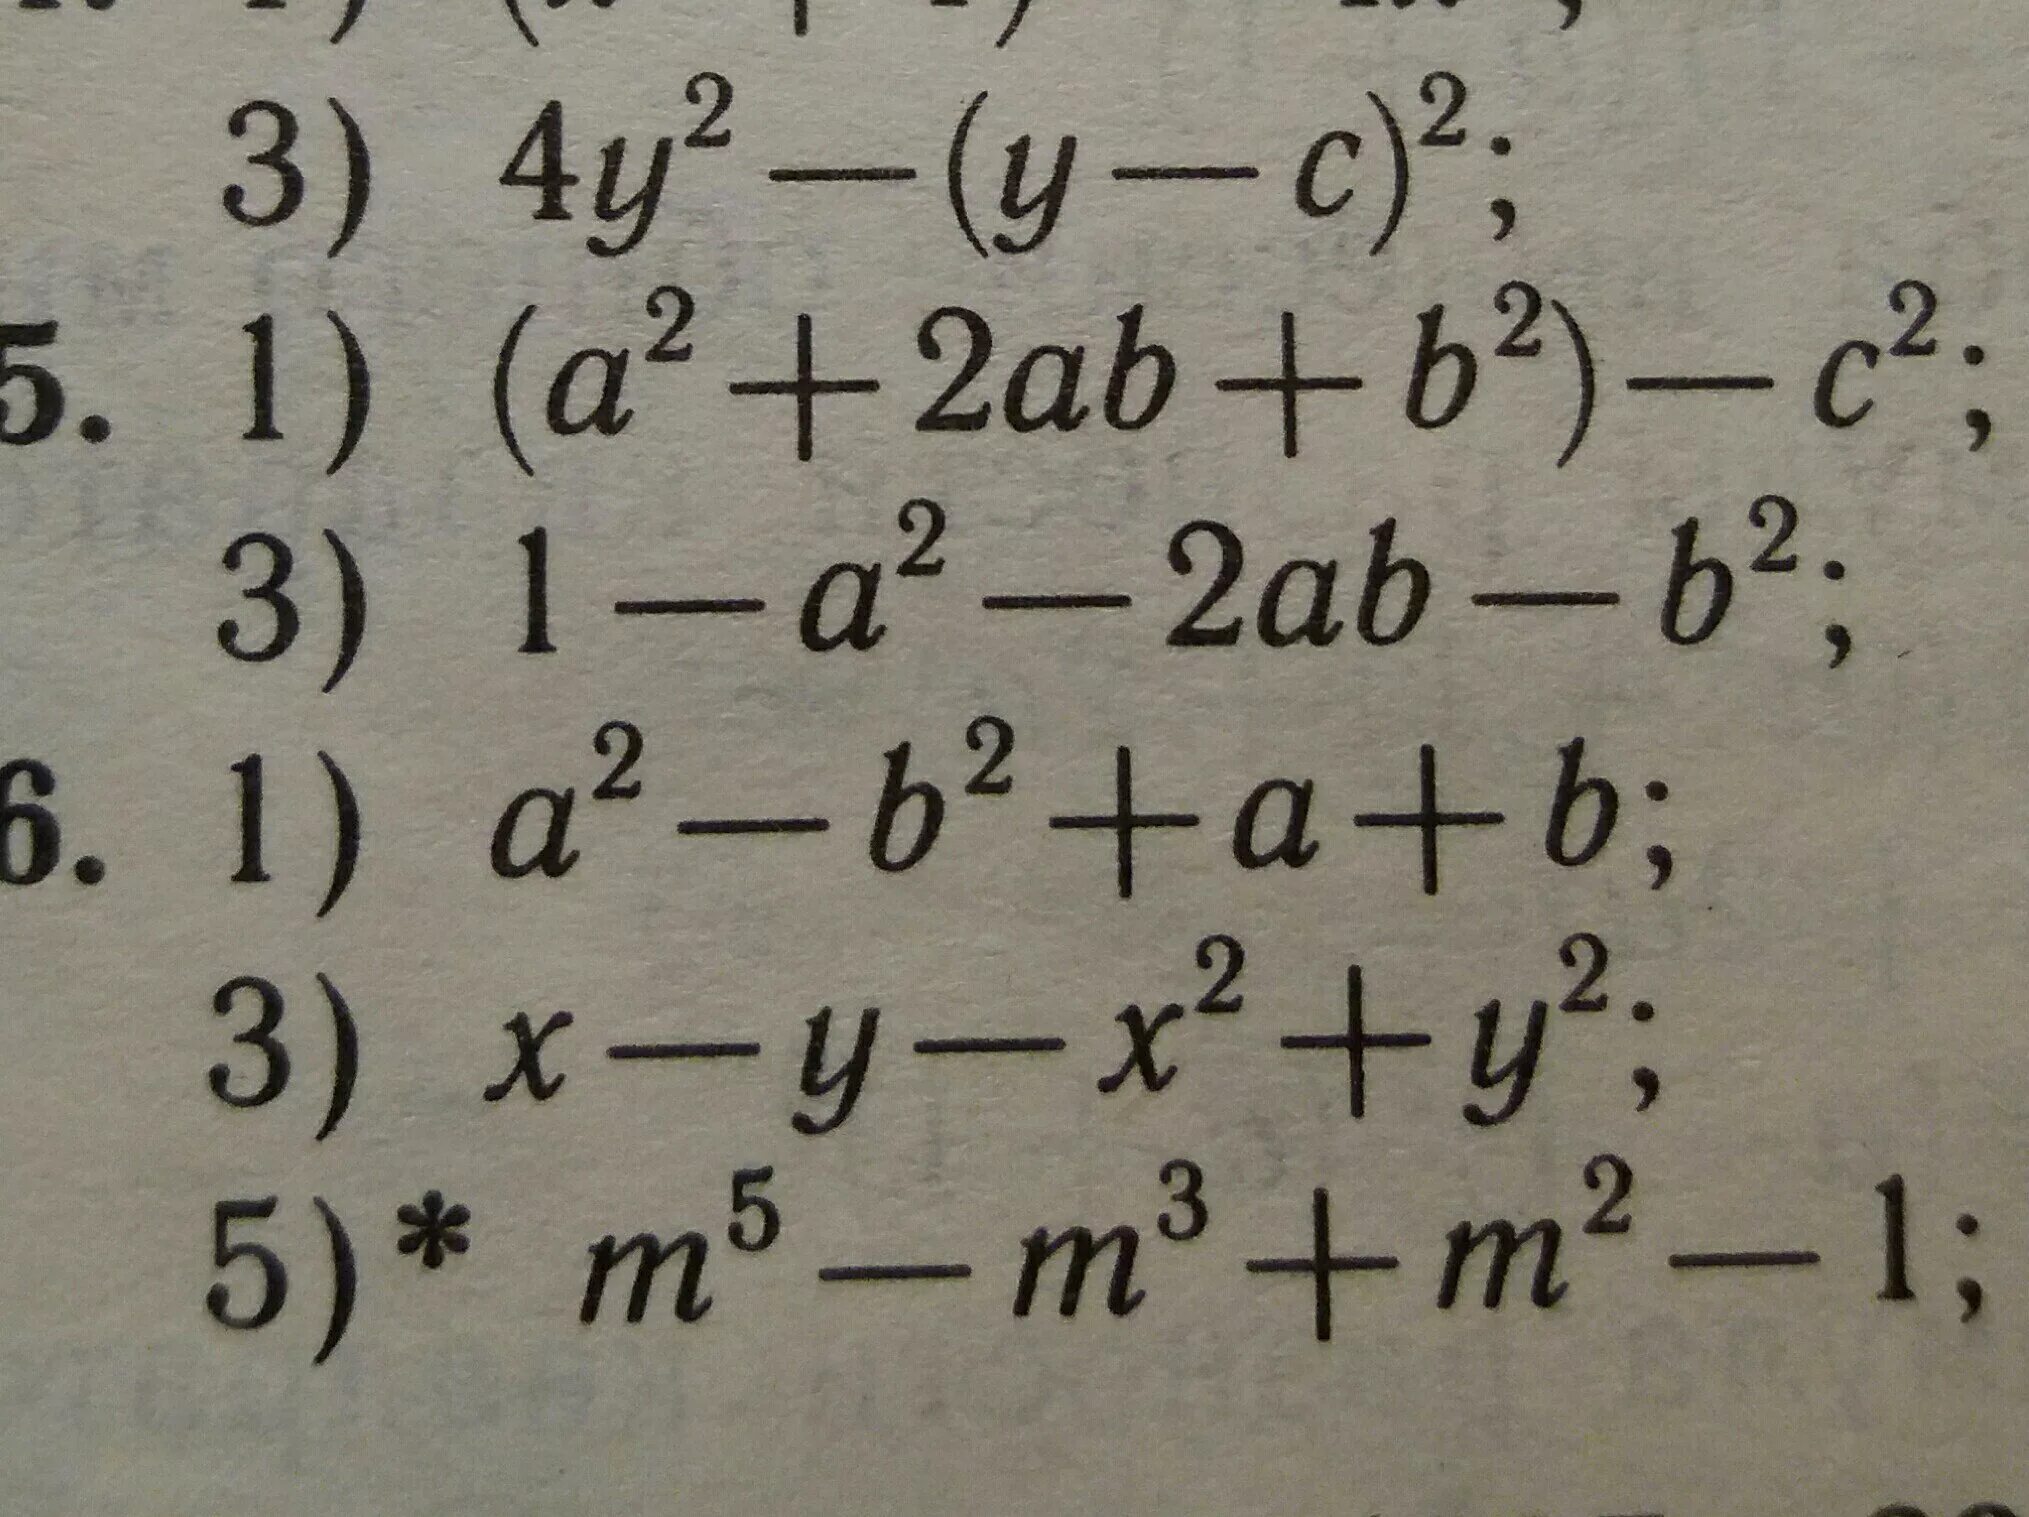 A2-b2. C^2-4b^2. A2-16b2. A 2 2ab b 2 формулы. 0.5 z